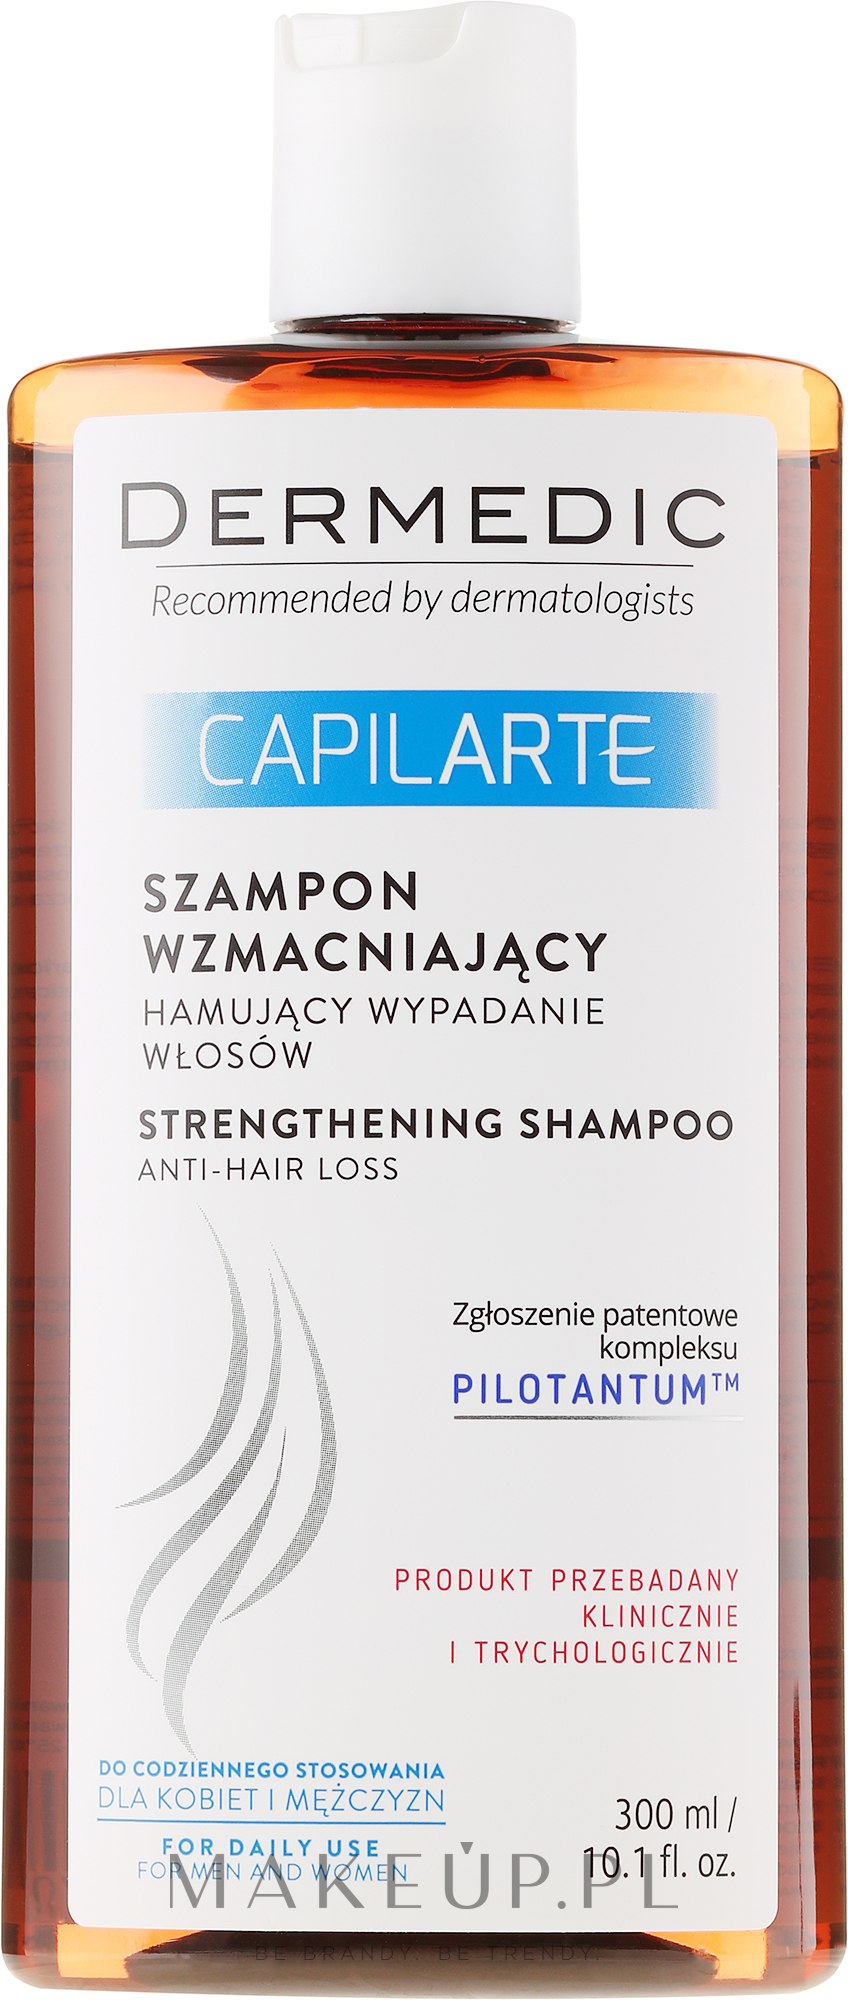 capilarte szampon wzmacniający hamujący wypadanie włosów opinie